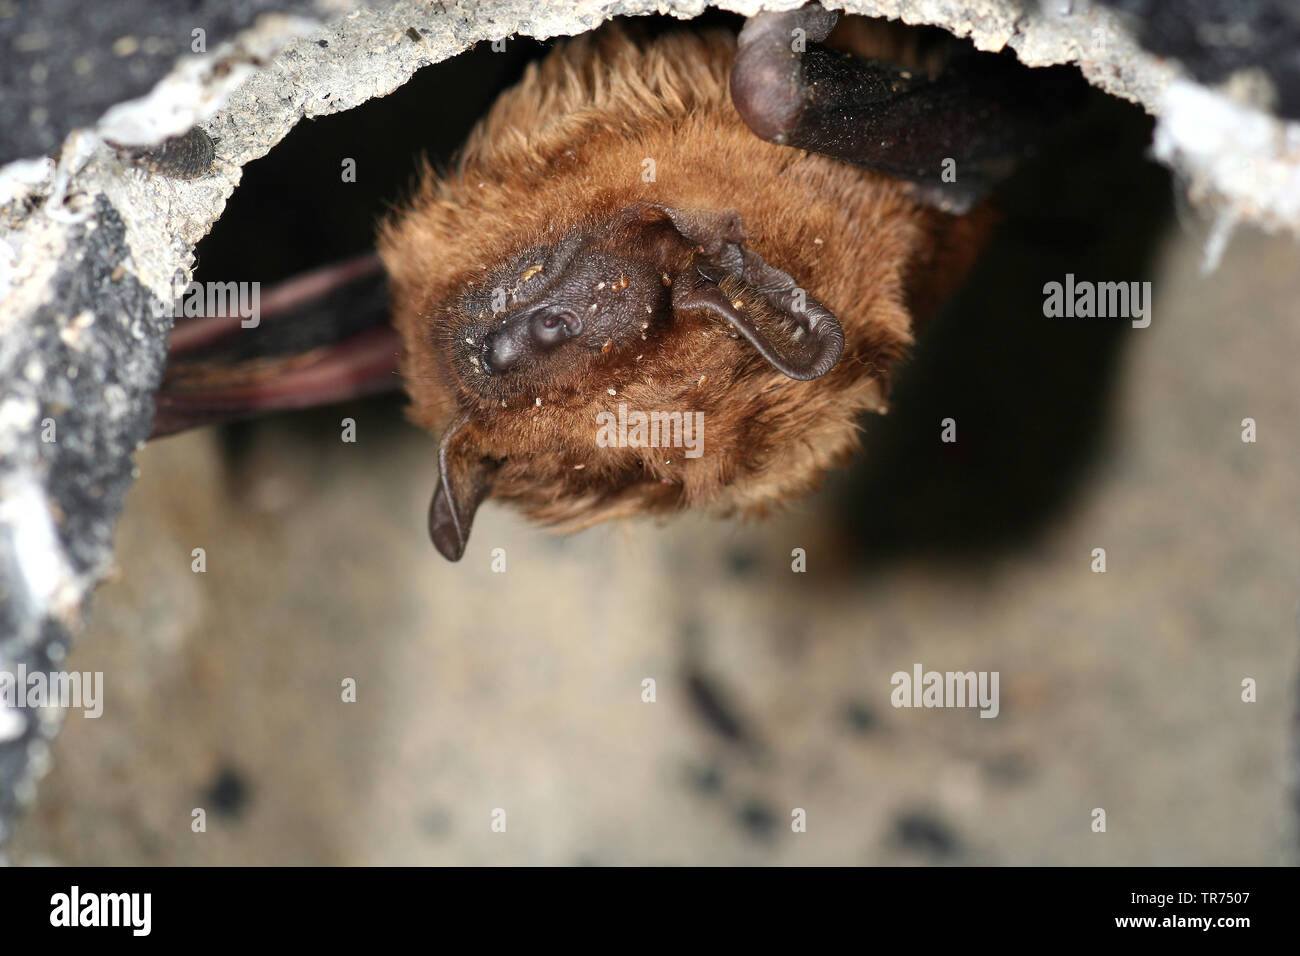 noctule (Nyctalus noctula), sleeping, Netherlands Stock Photo